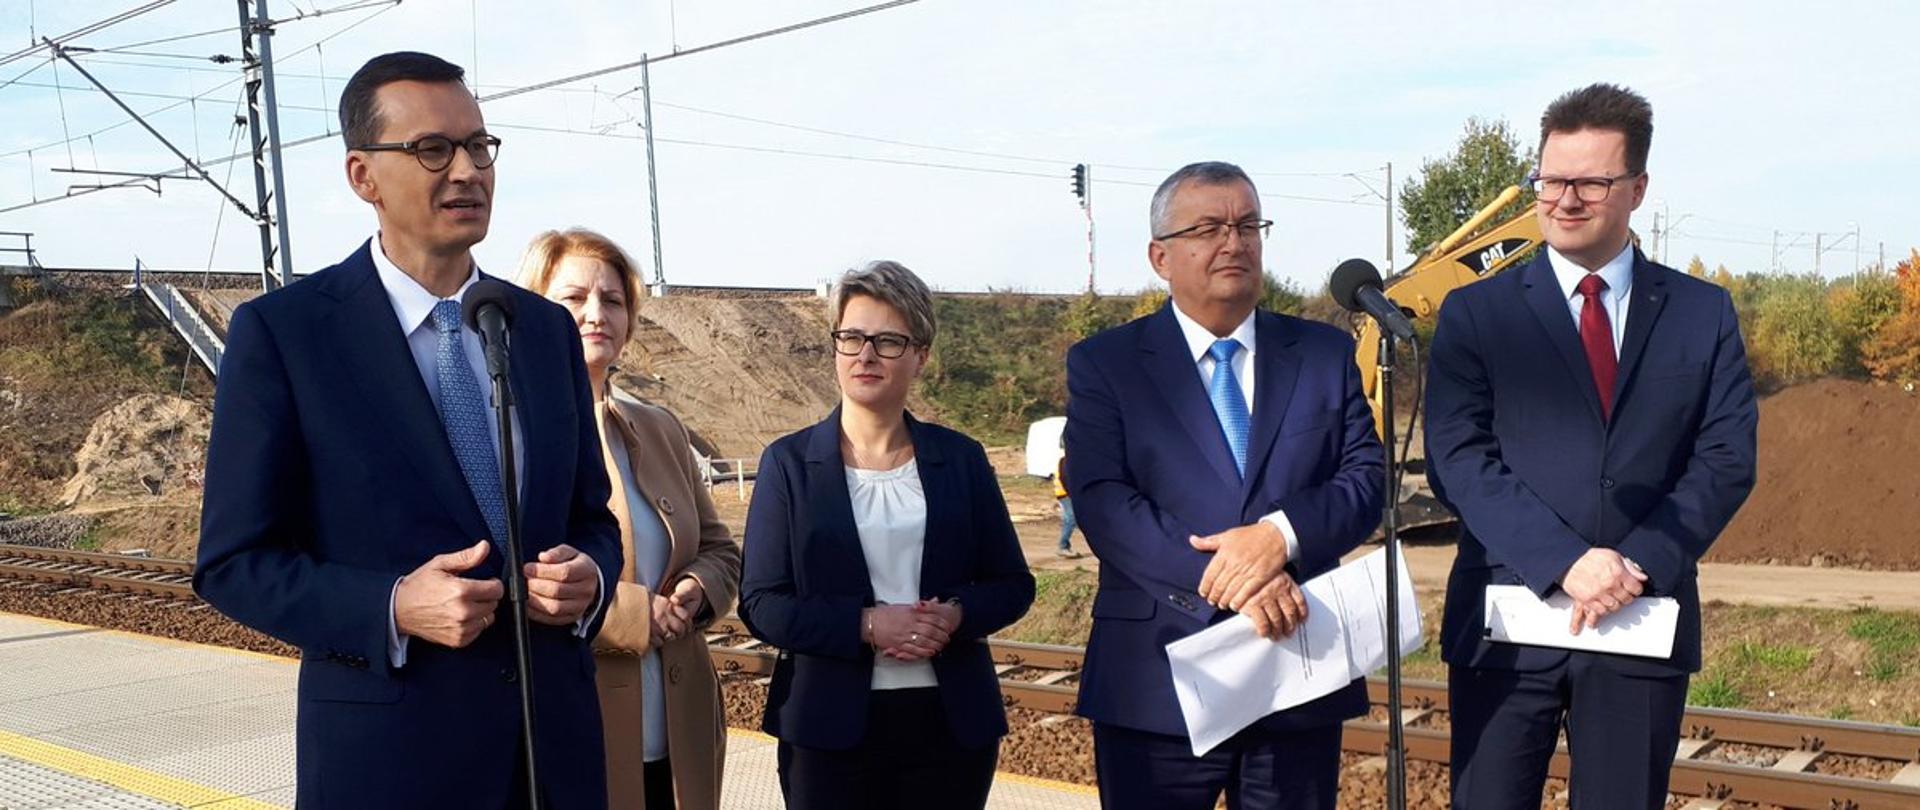 Premier M. Morawiecki, minister infrastruktury A. Adamczyk prezentują założenia programu Kolei +